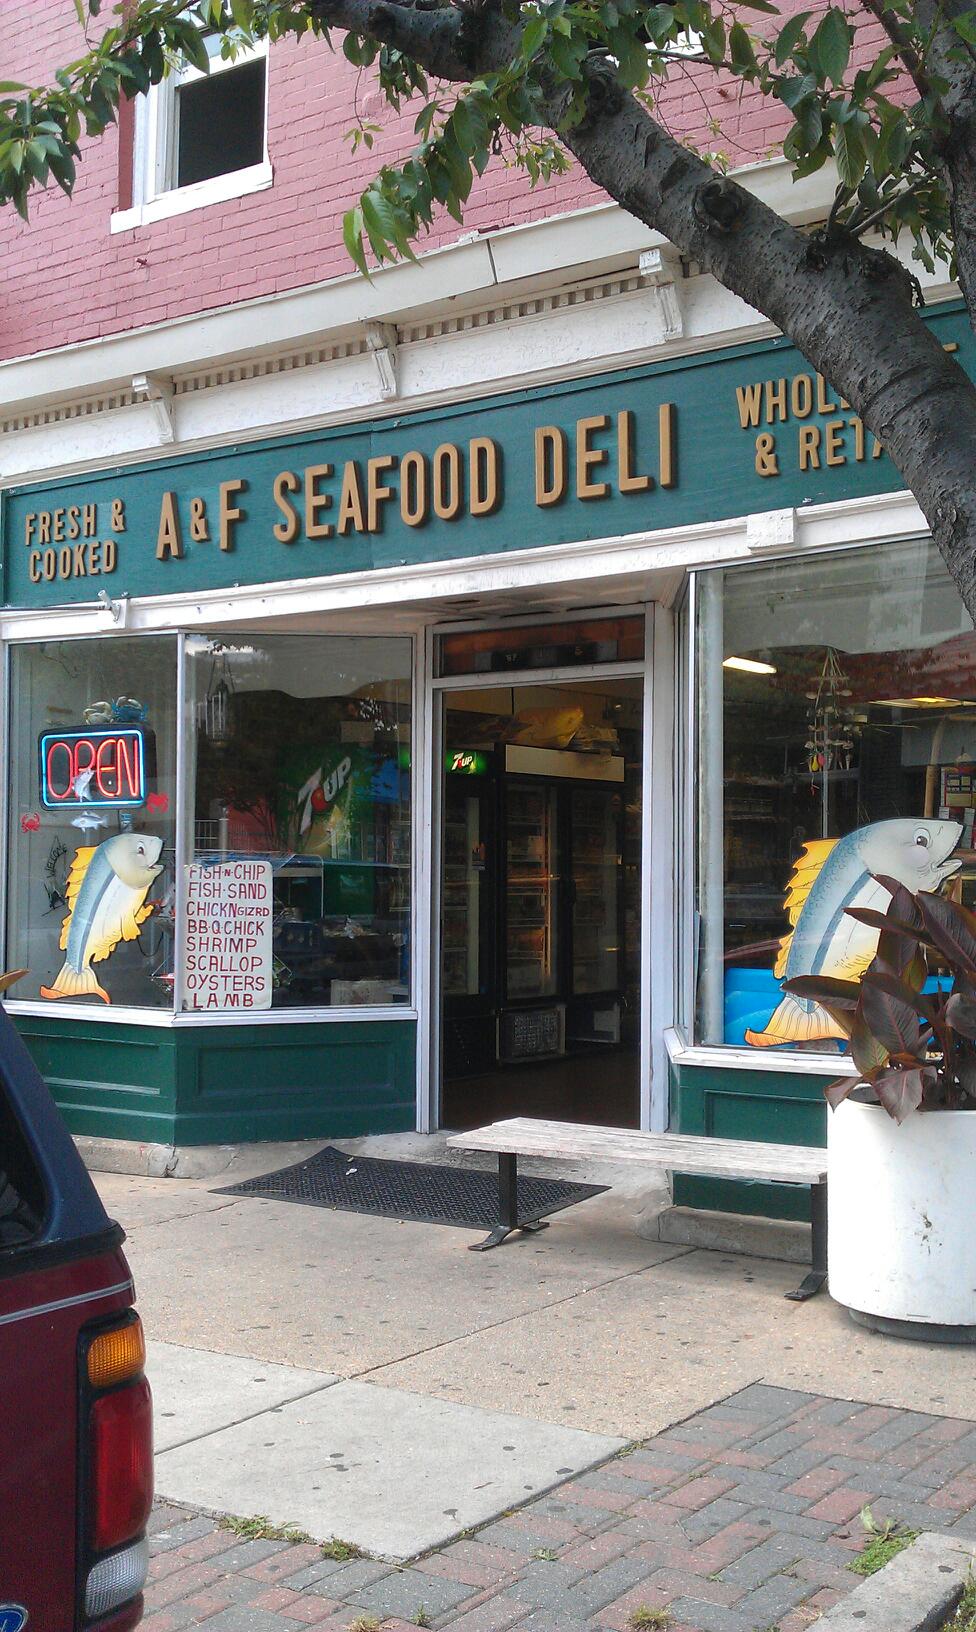 A & F Seafood Deli